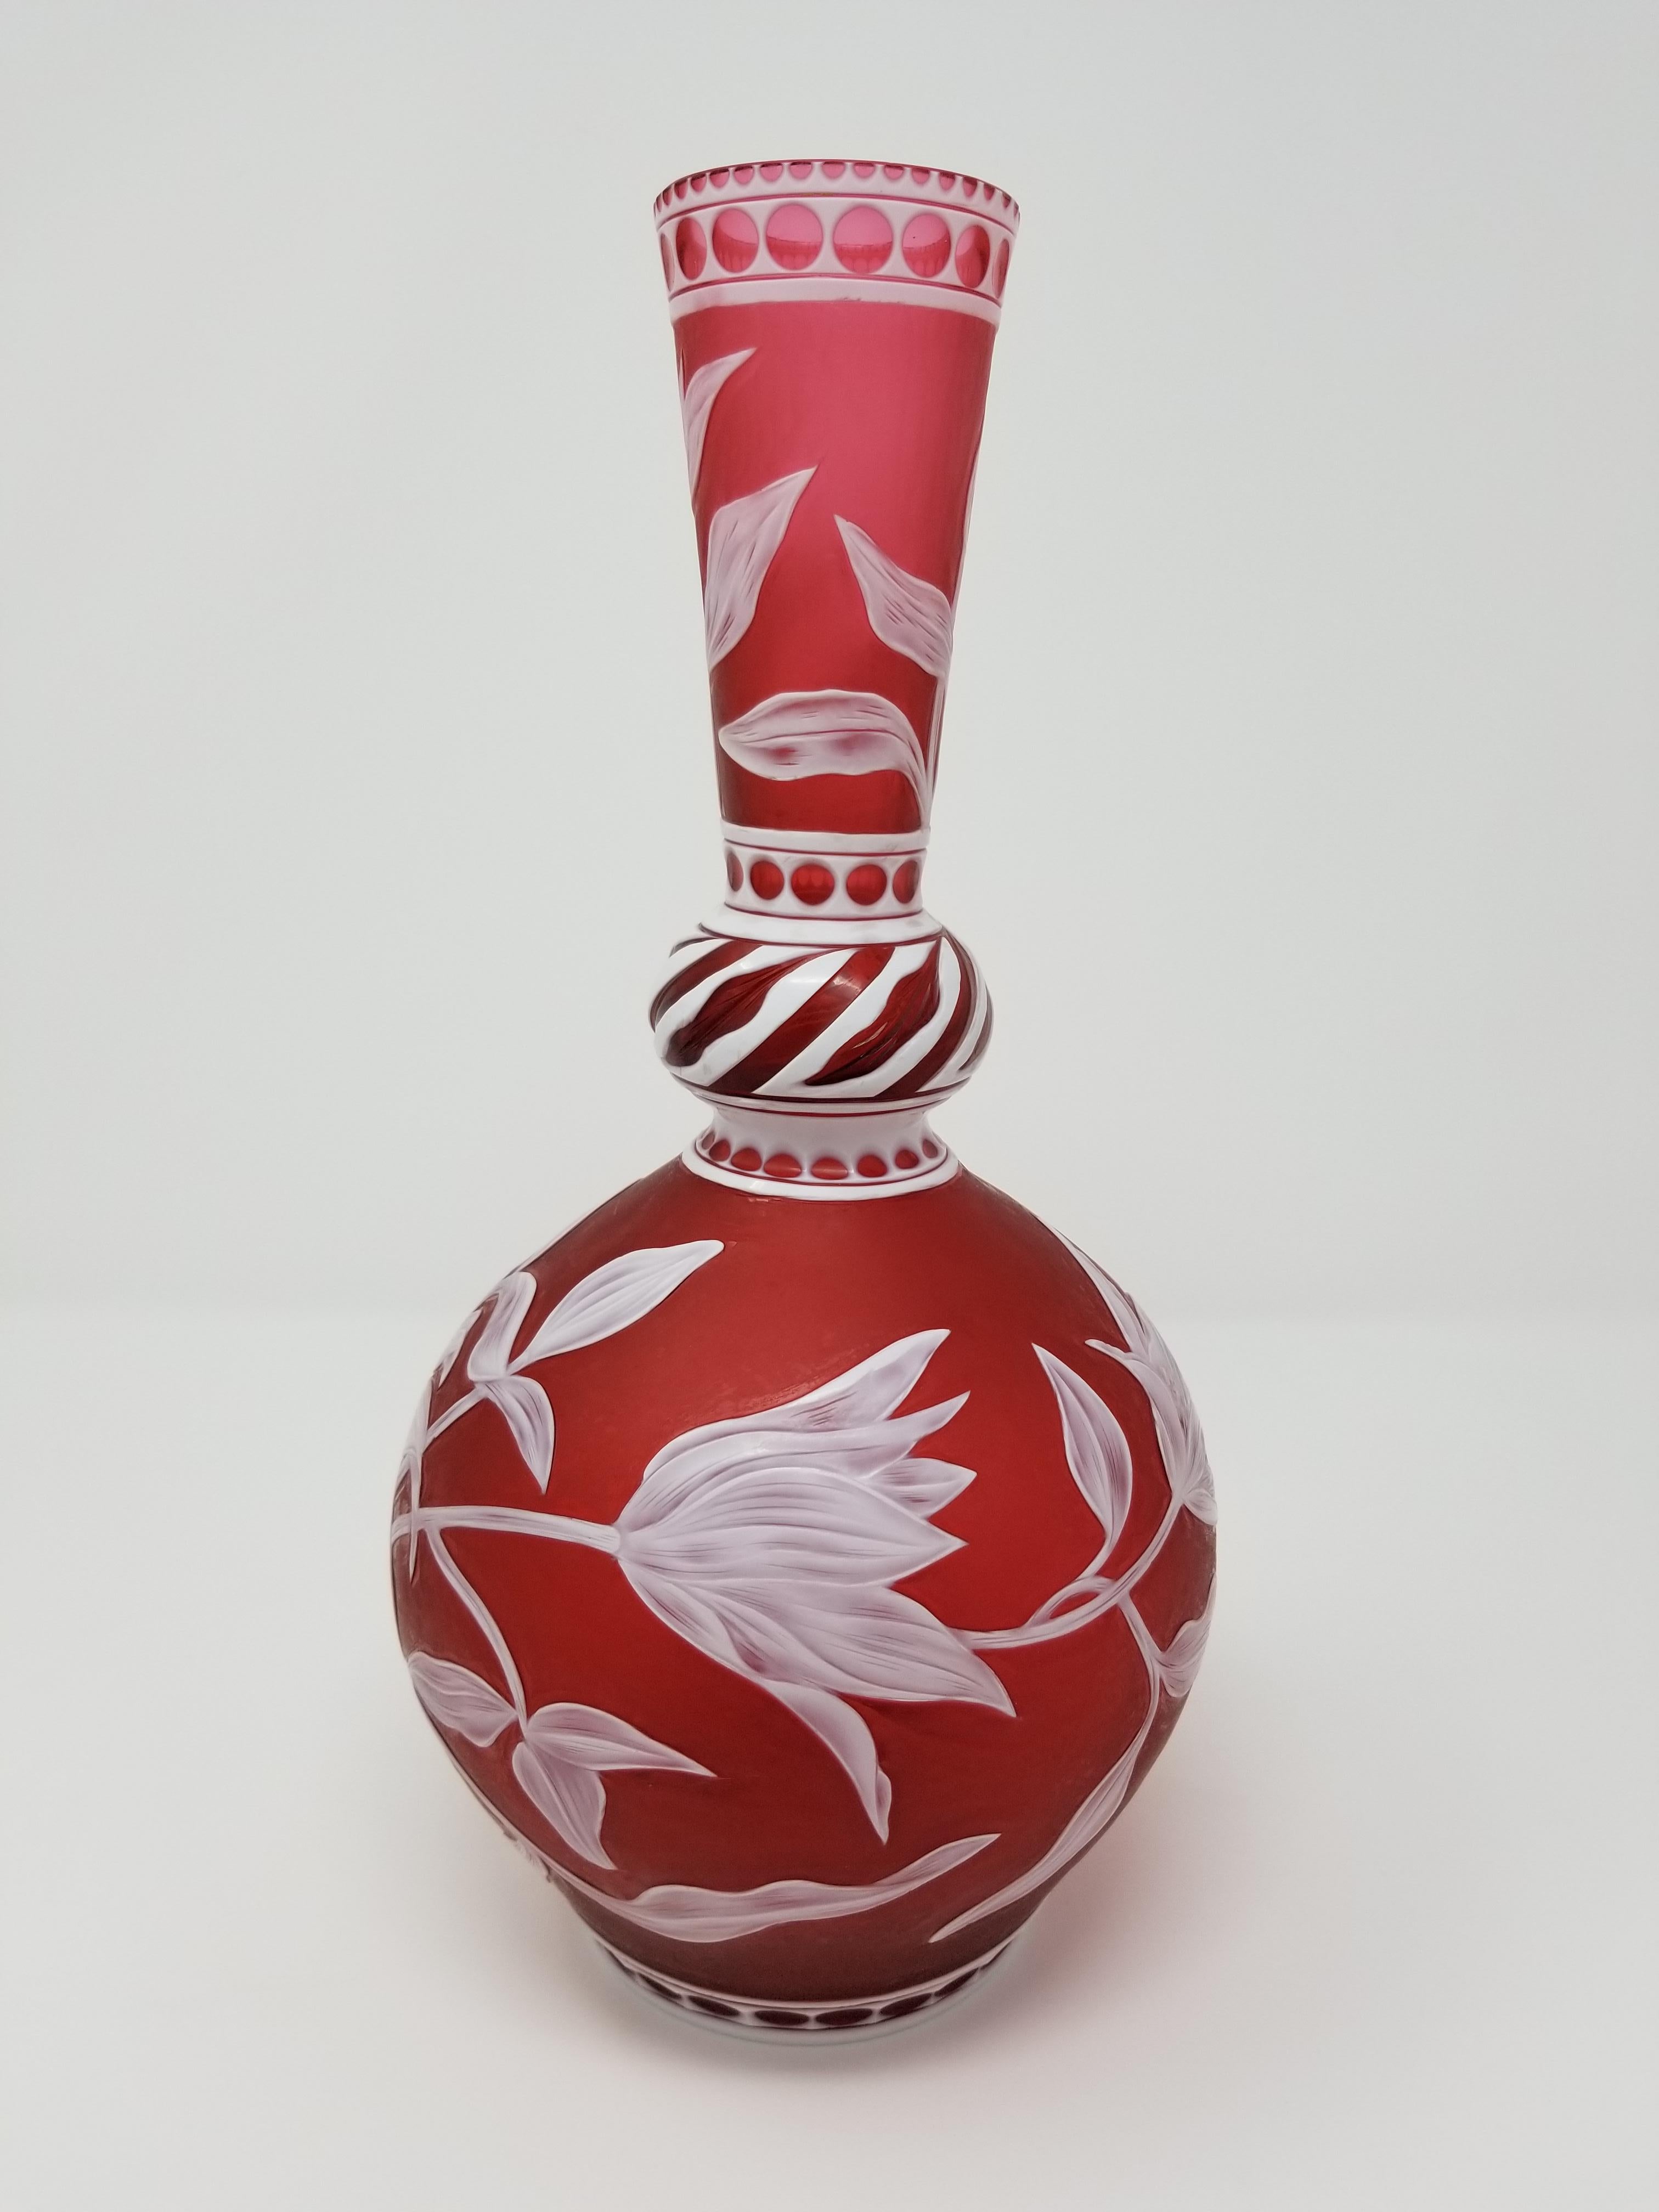 Magnifique vase en verre camée Stevens & Williams à superposition rouge et blanche, sculpté, gravé et gravé à la main par J. Millward, signé Stevens & Williams et J. Millward. Le vase a été créé en forme de balustre avec un long col de bouteille.